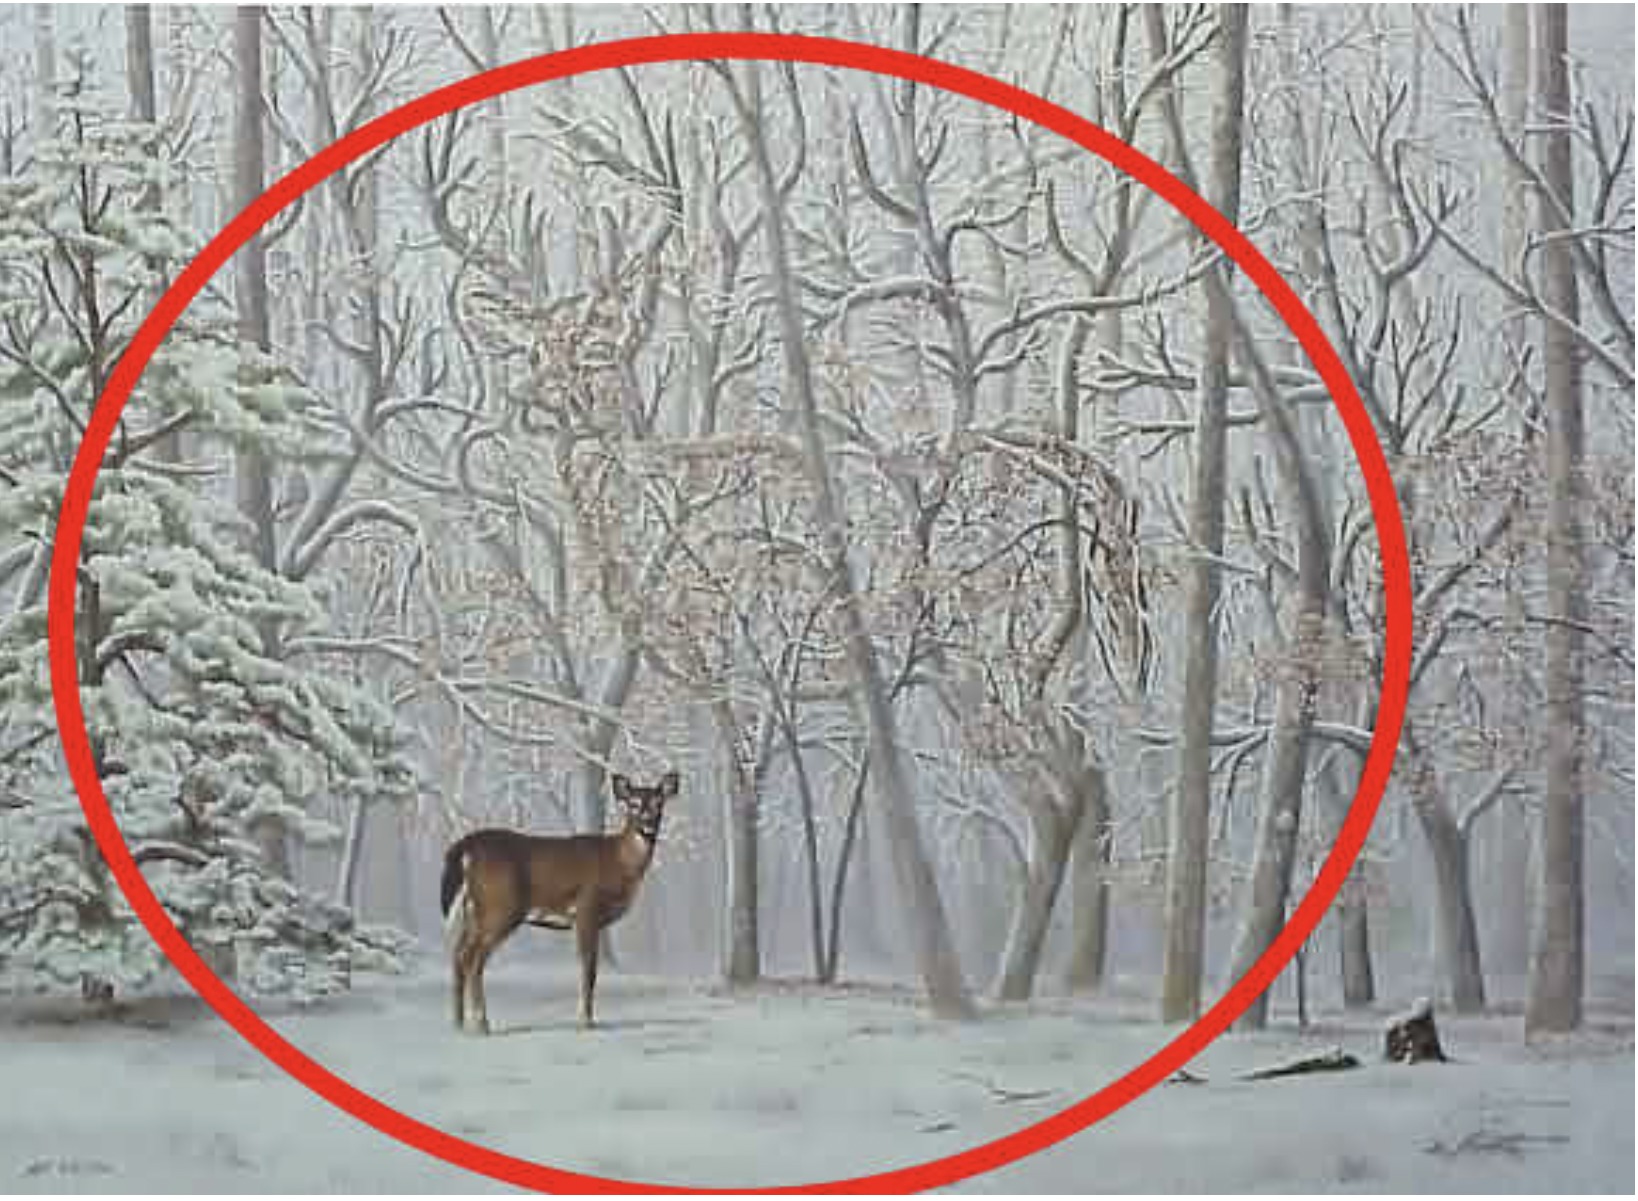 Encontre o segundo cervo em 5 segundos. (Imagem: Pinterest/Reprodução) - gabarito